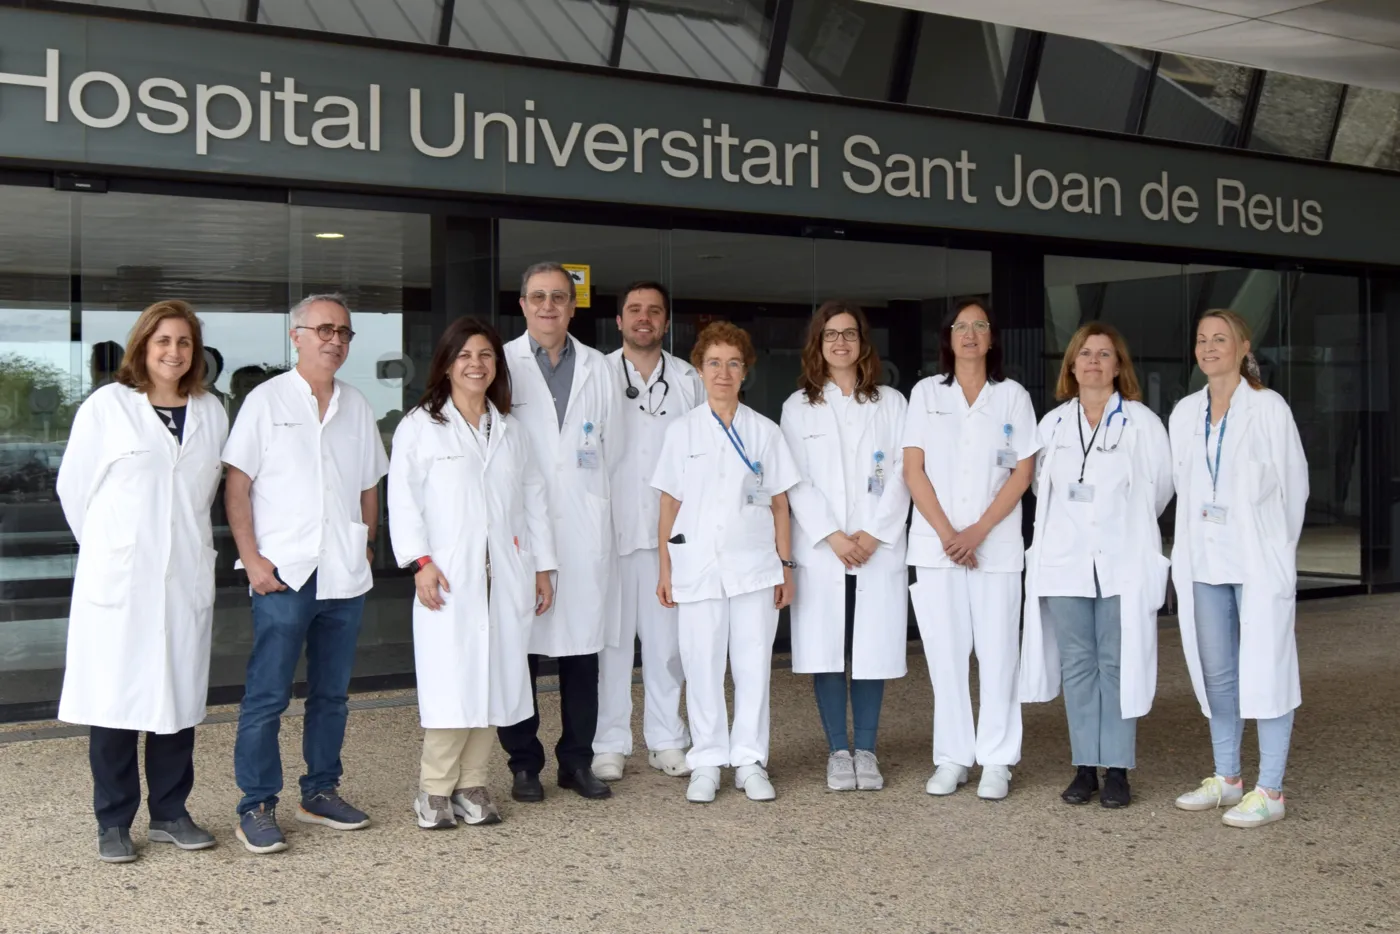 Comitè Interdisciplinari d’Asma Greu de l’Hospital Universitari Sant Joan de Reus